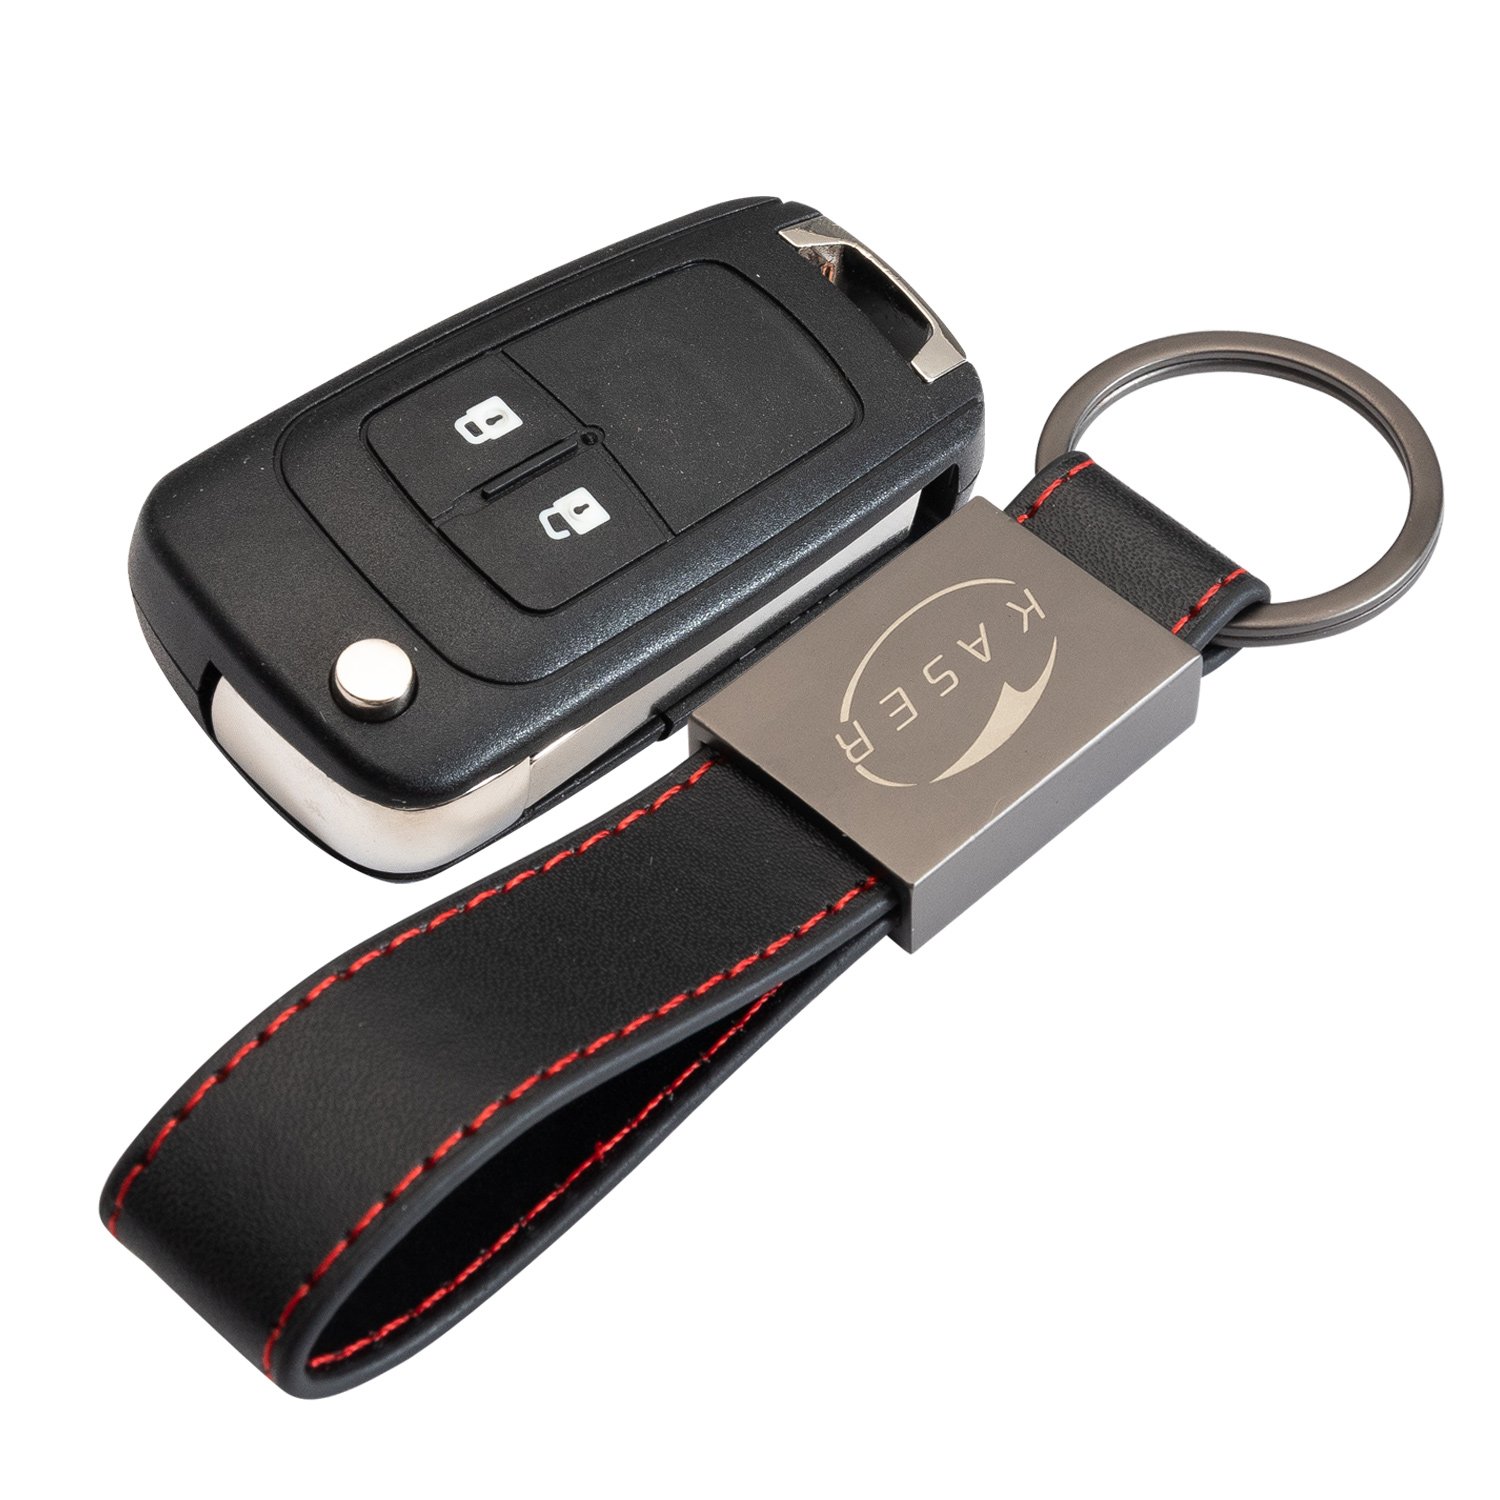 KASER Schlüssel Gehäuse Fernbedienung für Chevrolet 2 Tasten Autoschlüssel Funkschlüssel Cruze Aveo Spark Captiva Matiz mit Leder Schlüsselanhänger von Kaser